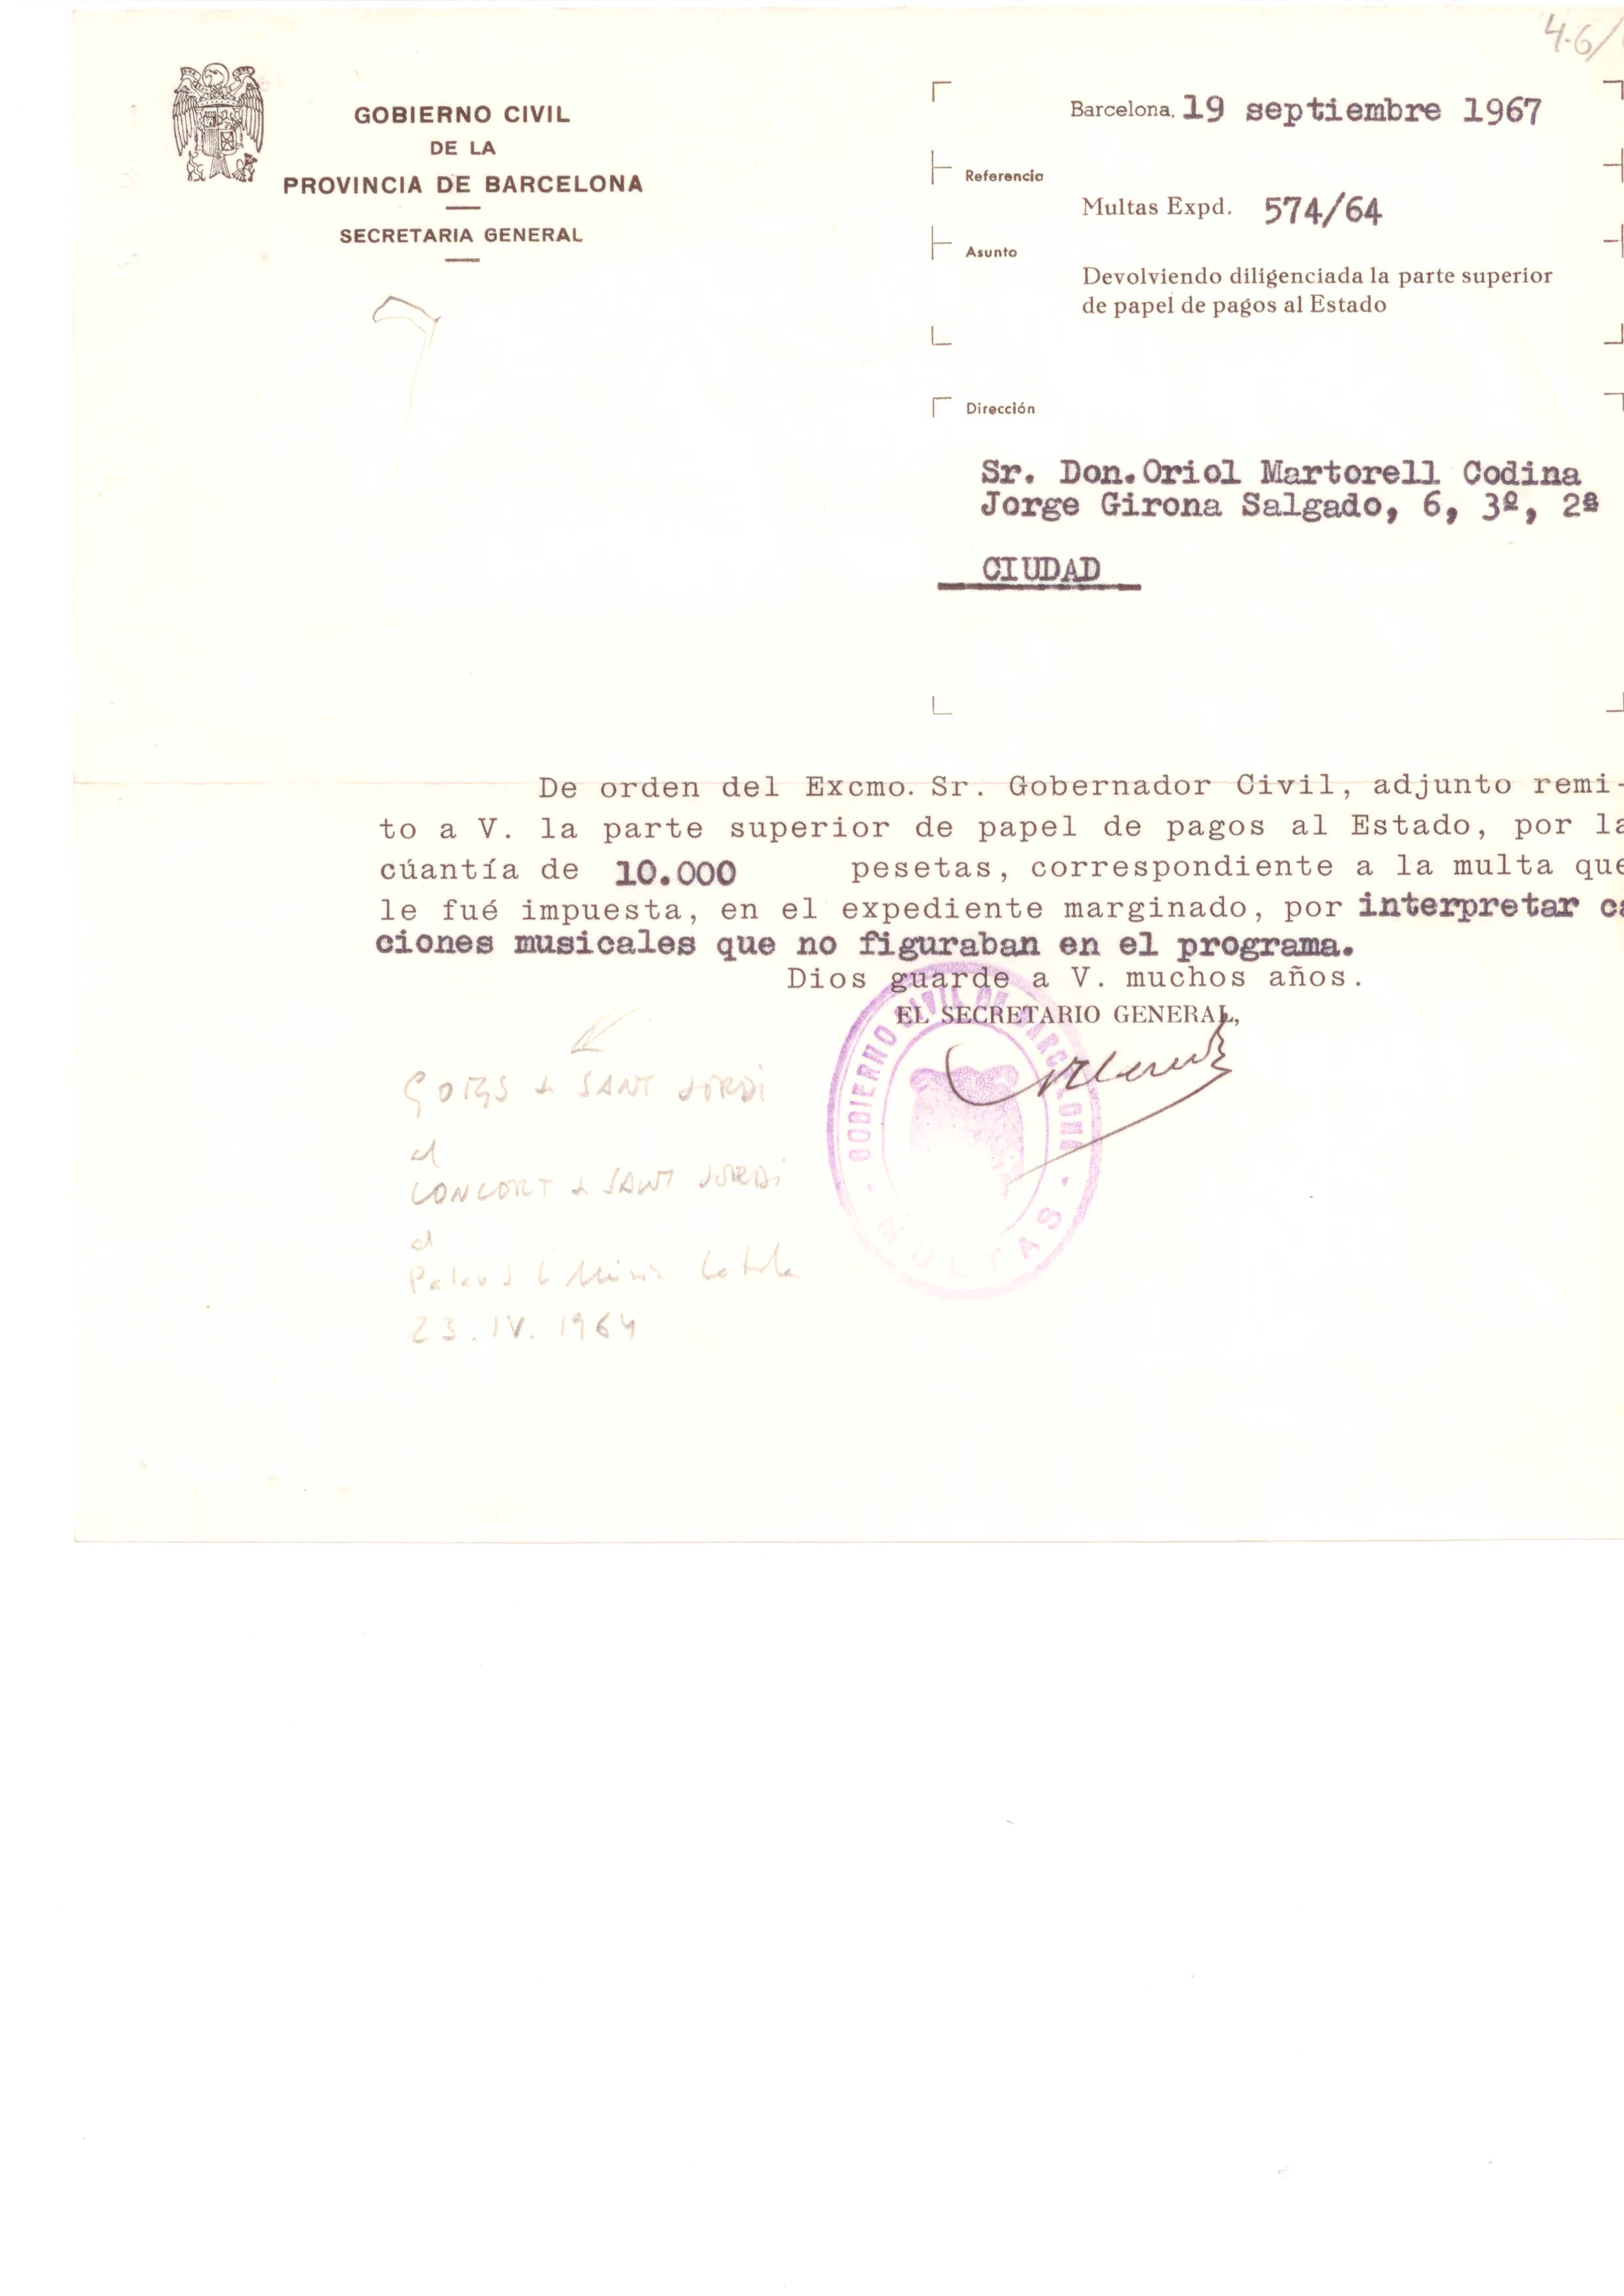 Multa del Gobierno Civil de la Província per haver cantat el 23 d’abril de 1964 la peça els «Goigs de Sant Jordi»